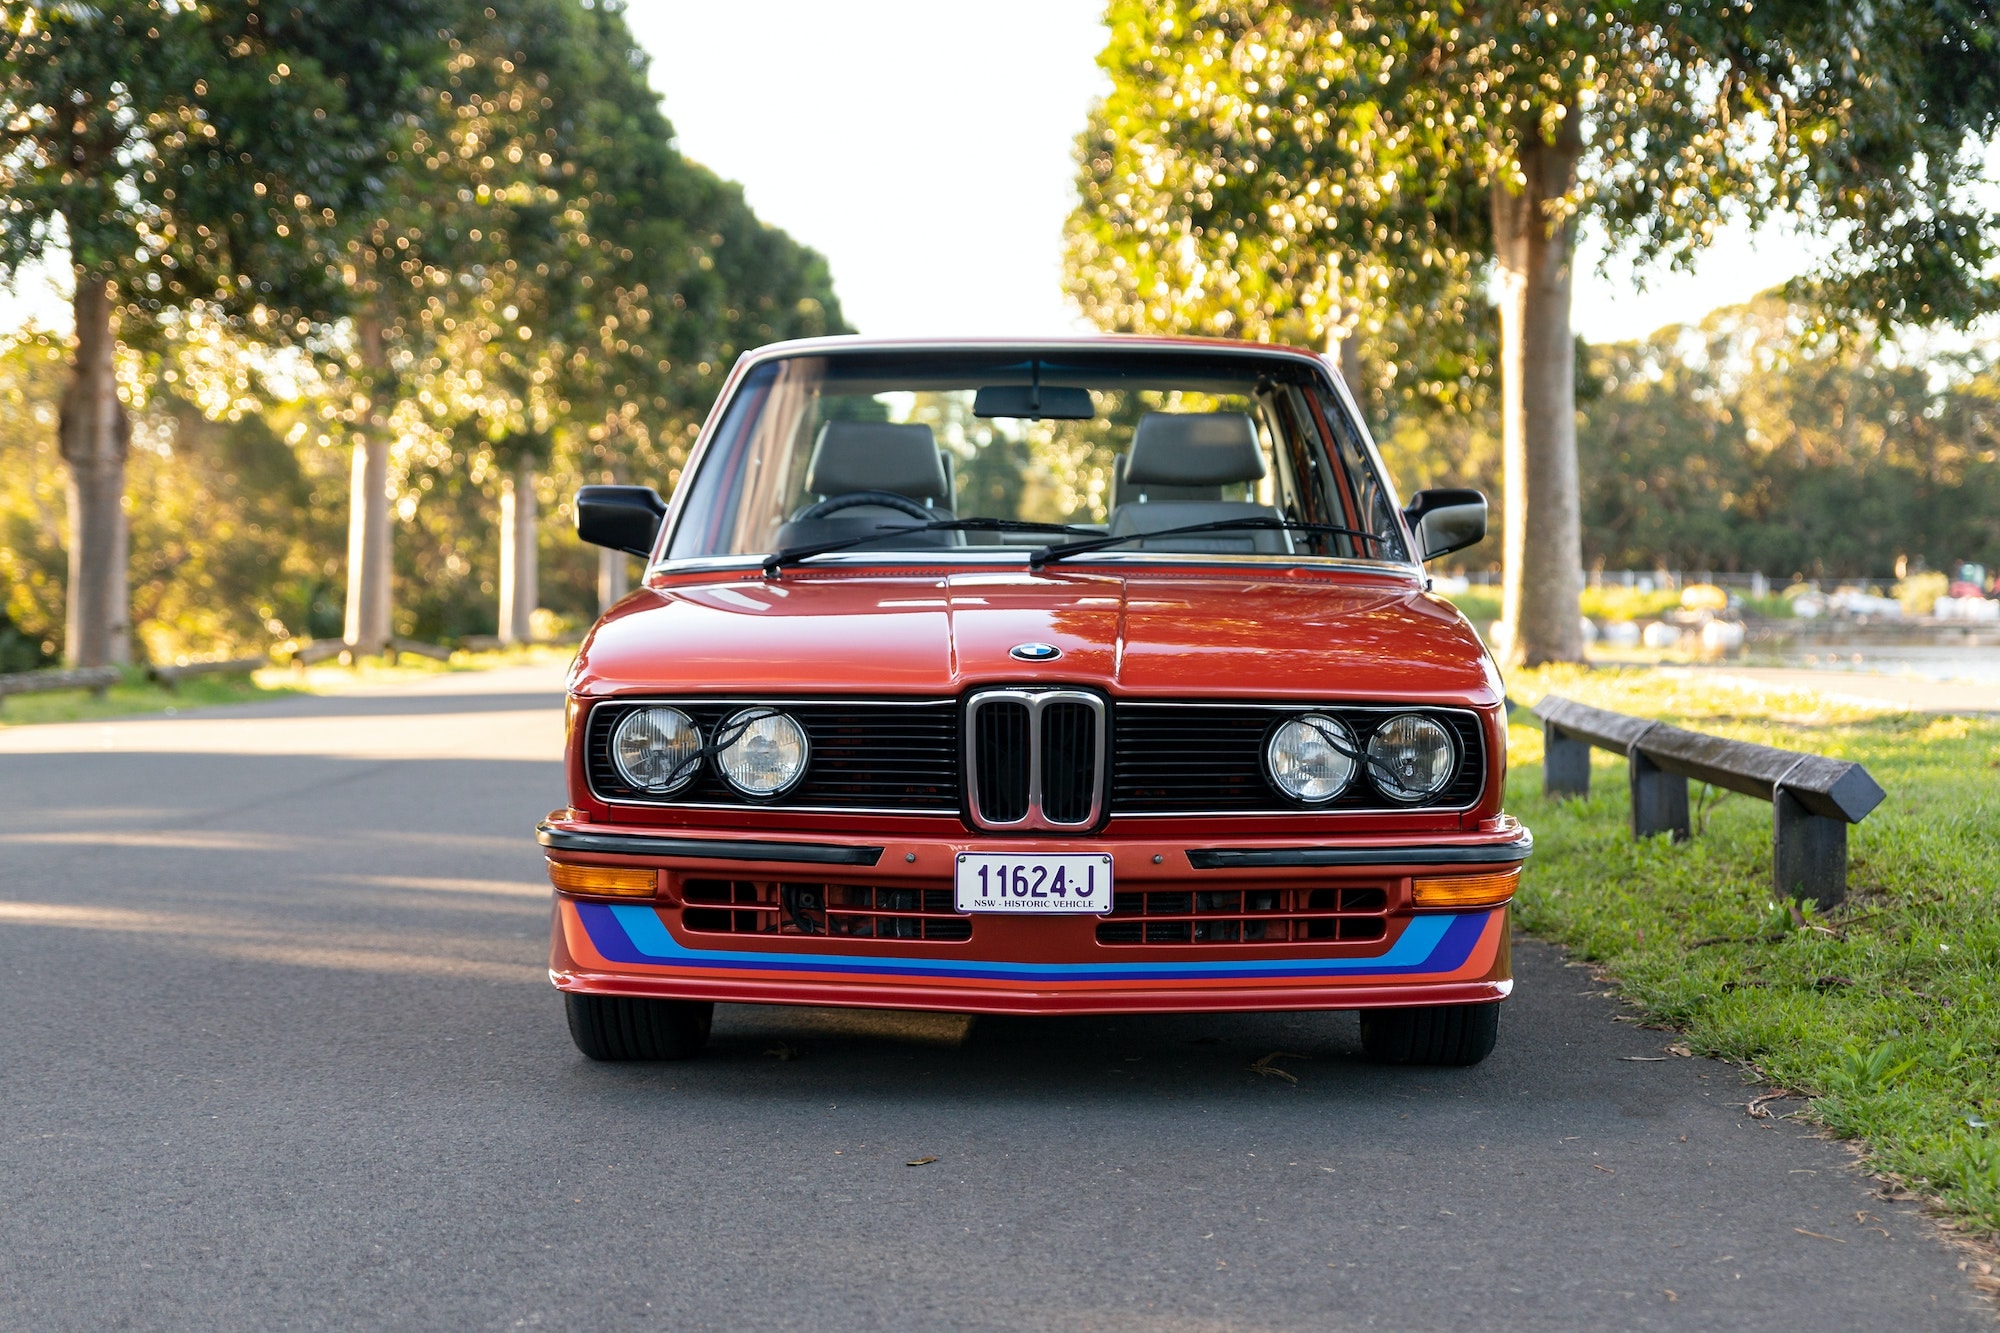 稀有 1981 年式樣 BMW E12 M535i 車款展開拍賣